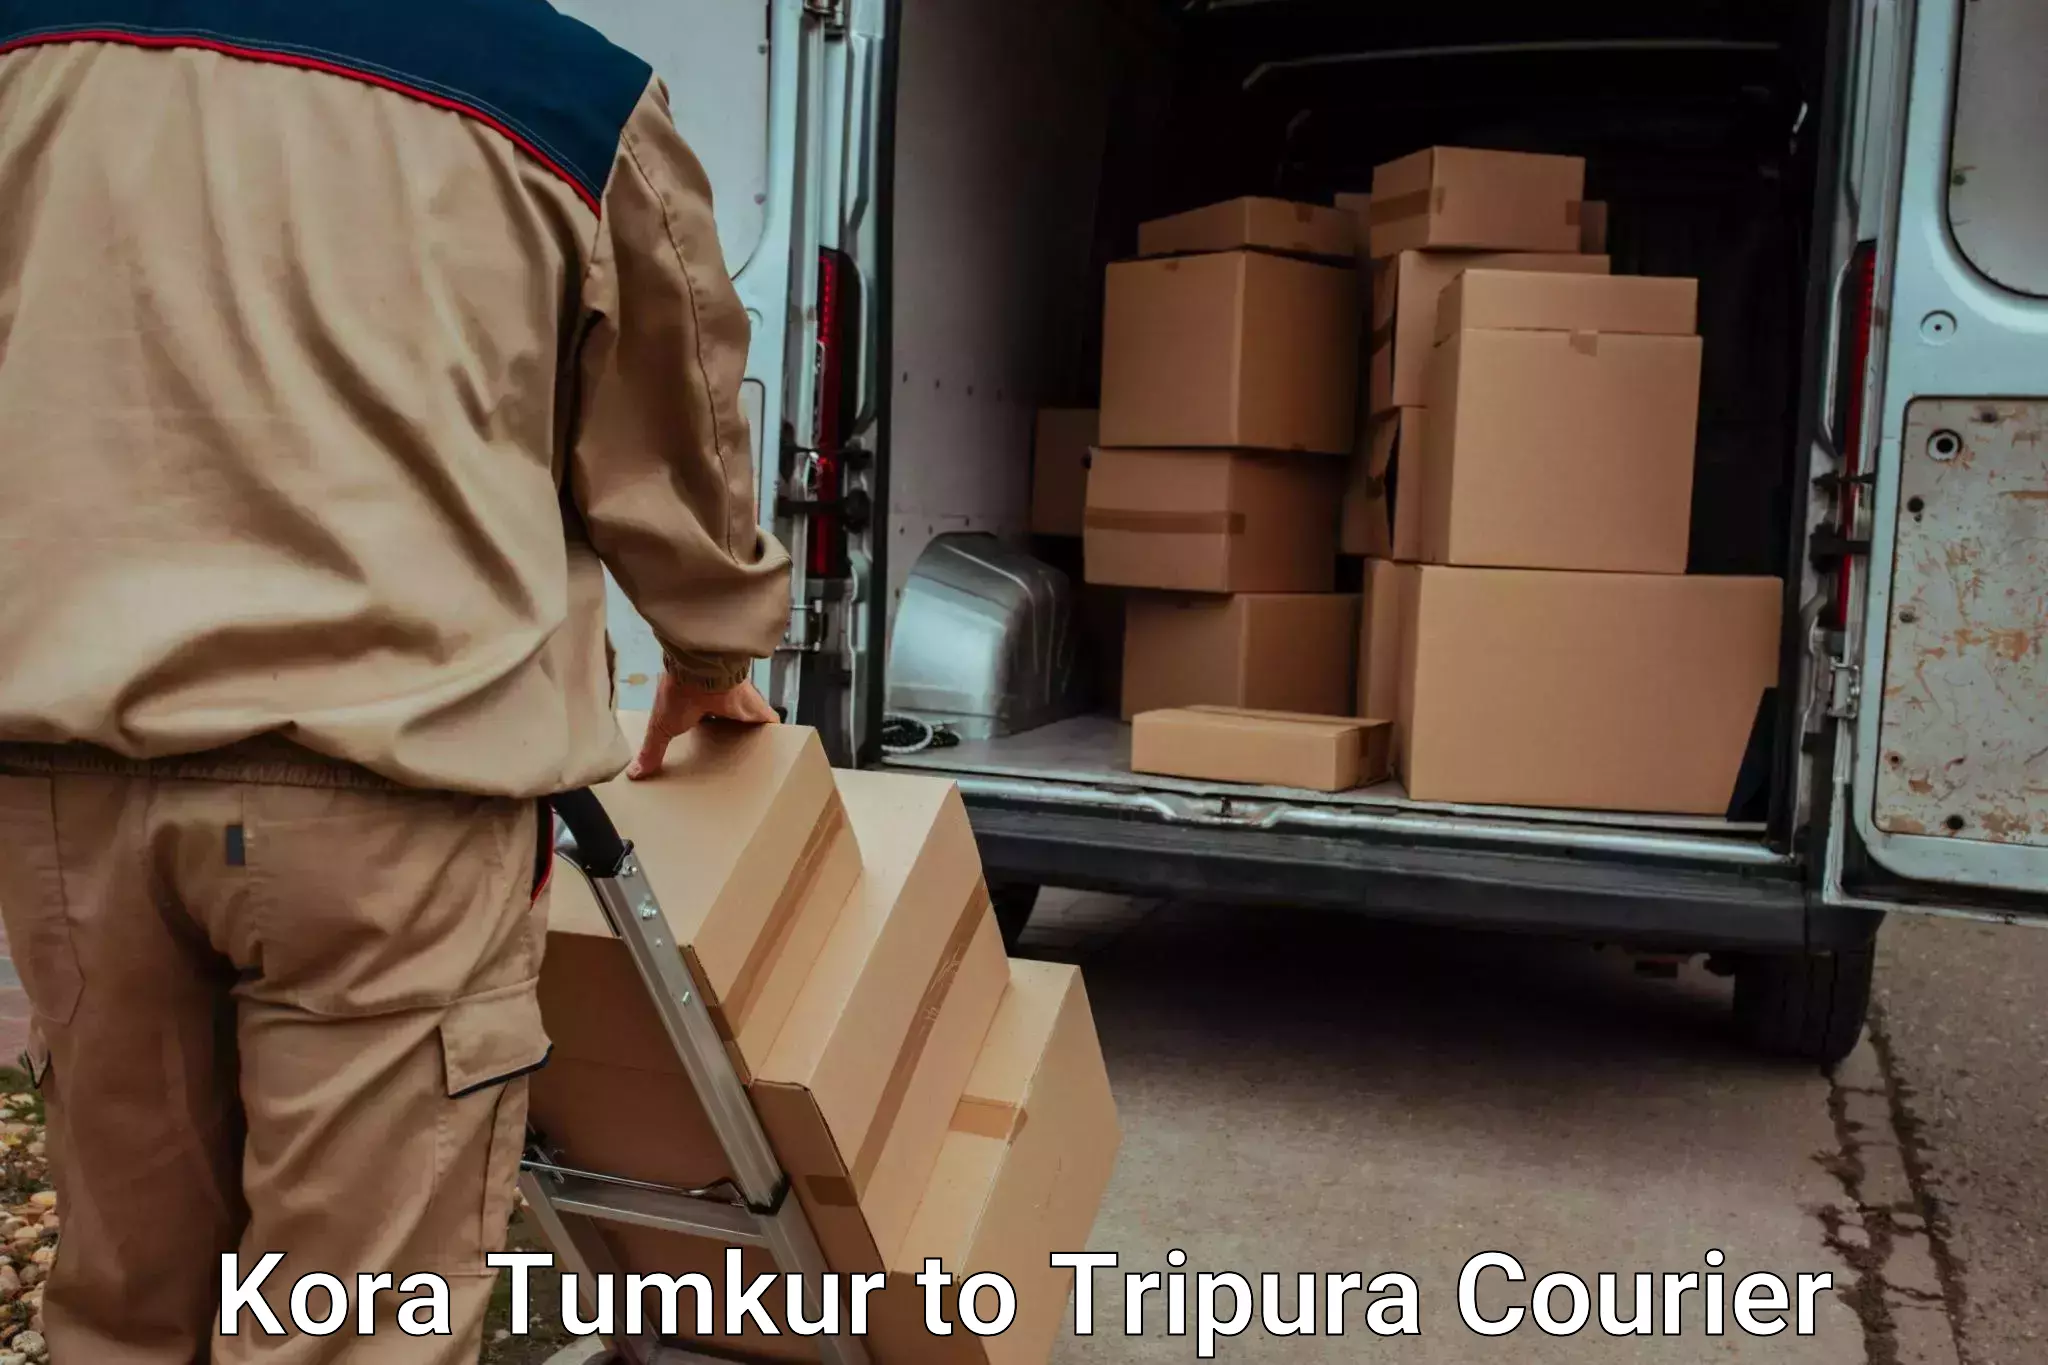 Nationwide luggage courier Kora Tumkur to Sonamura